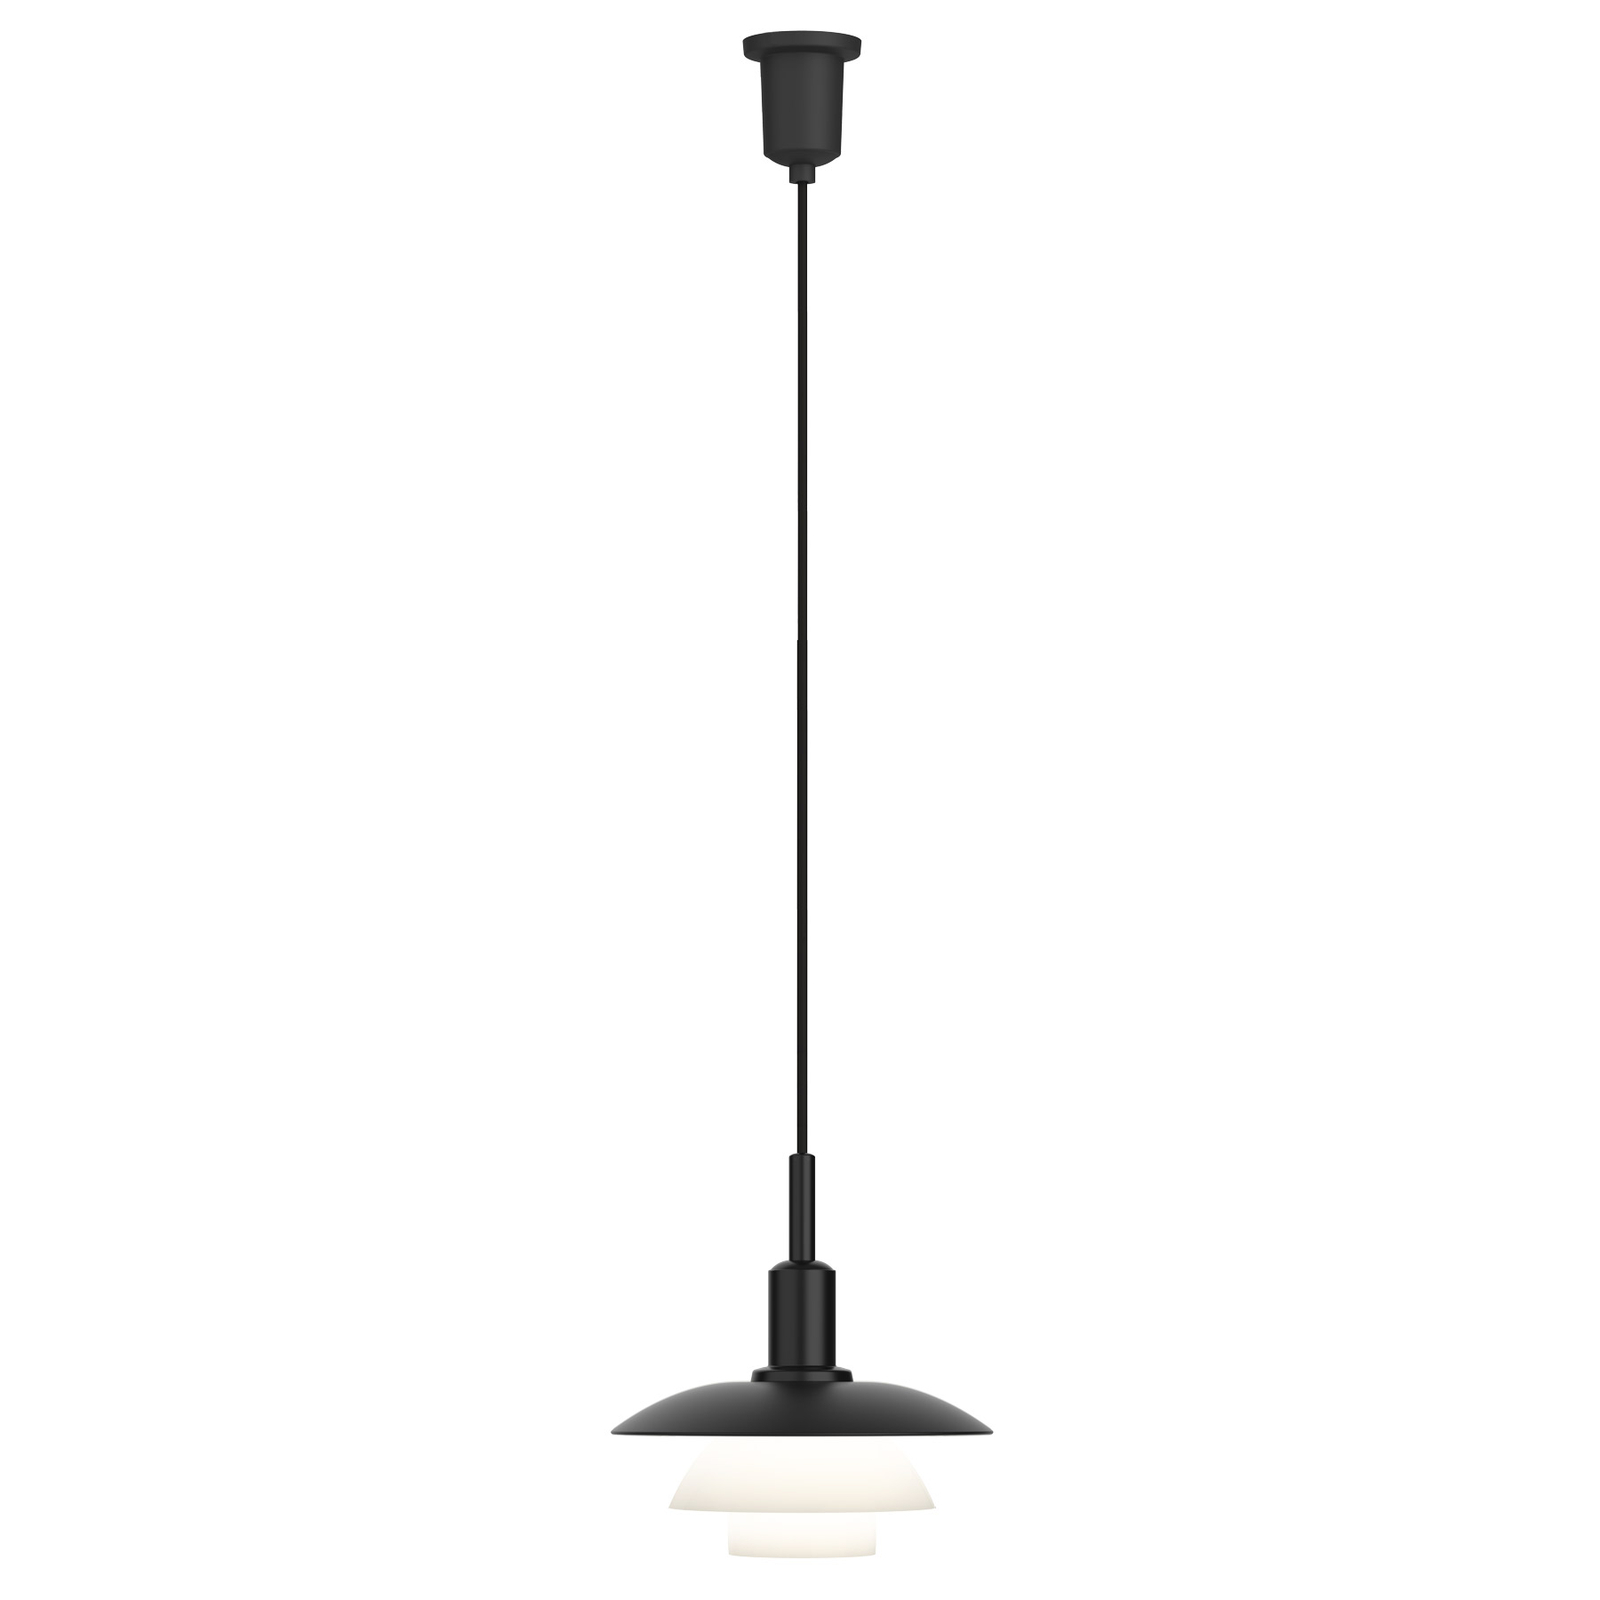 Louis Poulsen PH 3/3 hanglamp, zwart/wit